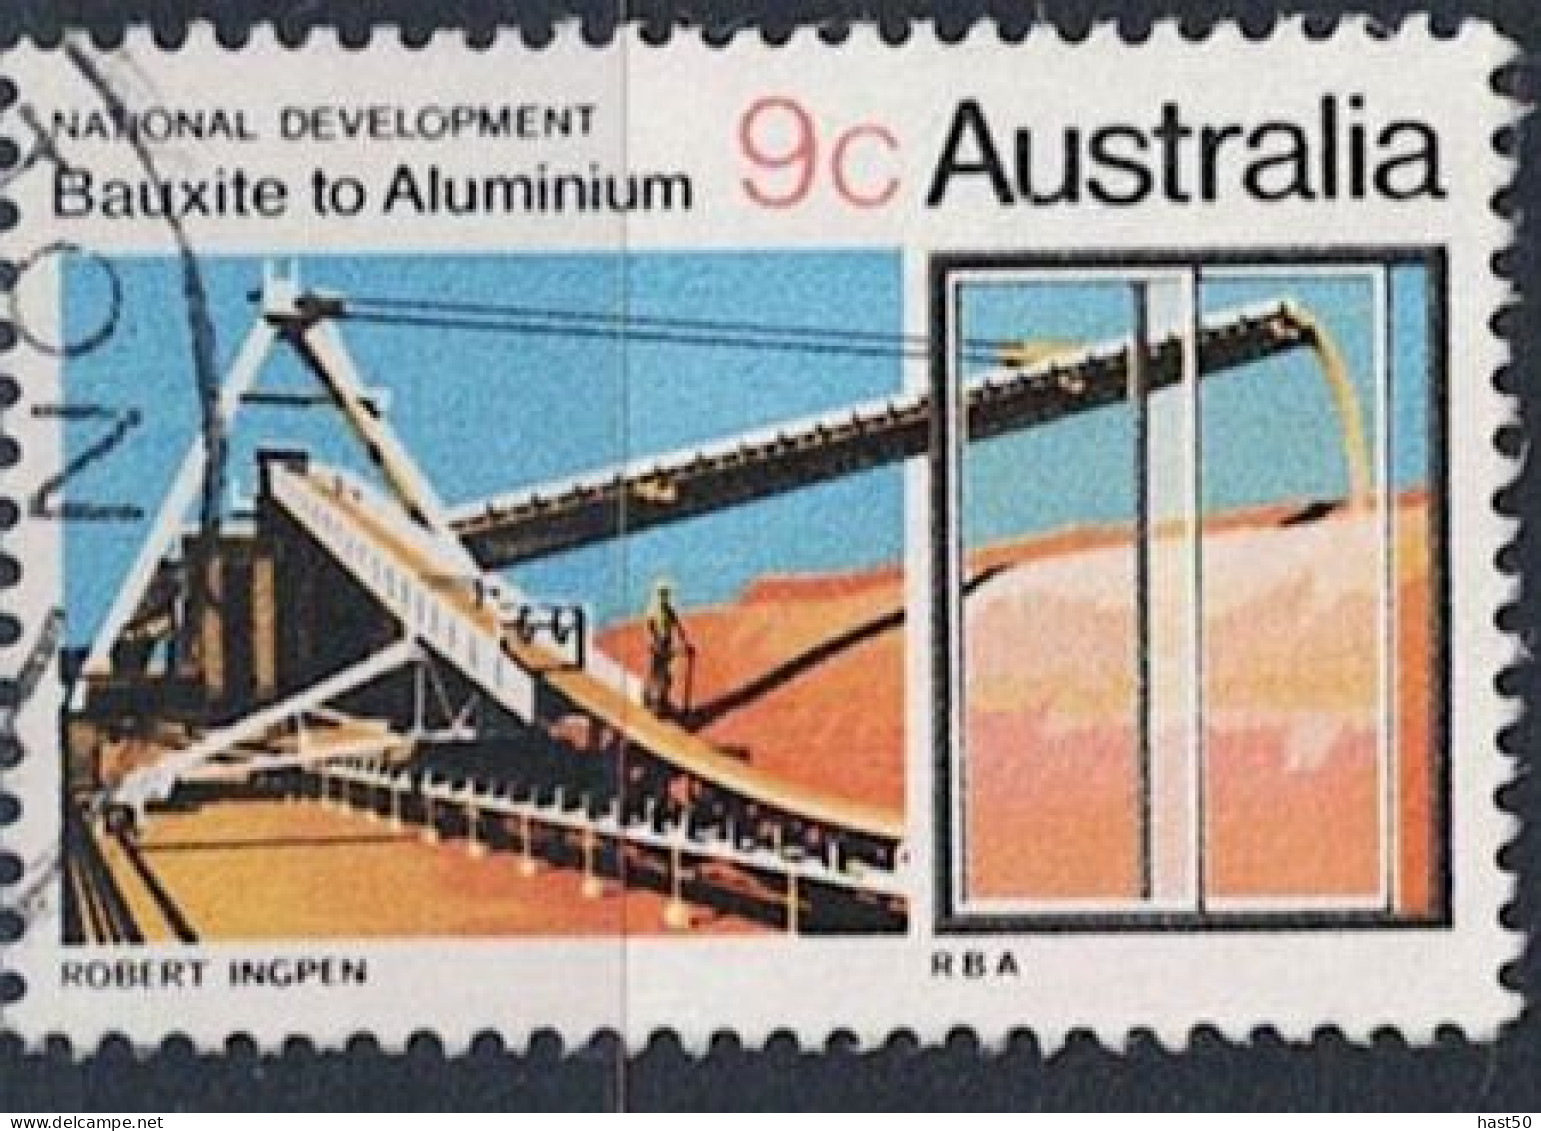 Australien Australia - Bauxit-Förderanlage / Aluminiumfenster (MiNr: 448) 1970 - Gest Used Obl - Gebruikt